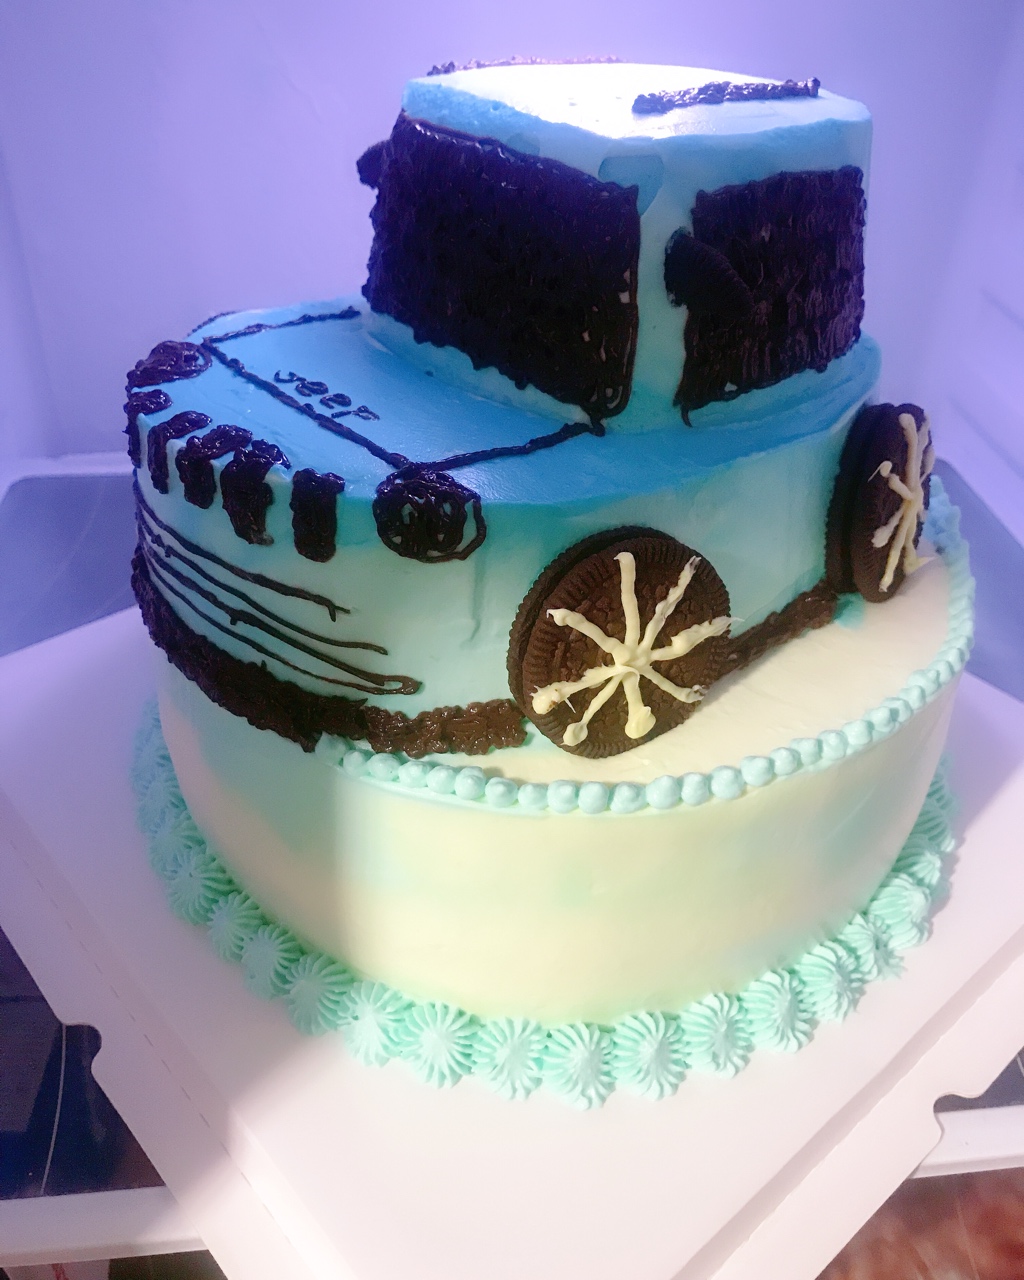 最潮的Jeep car cake汽车蛋糕